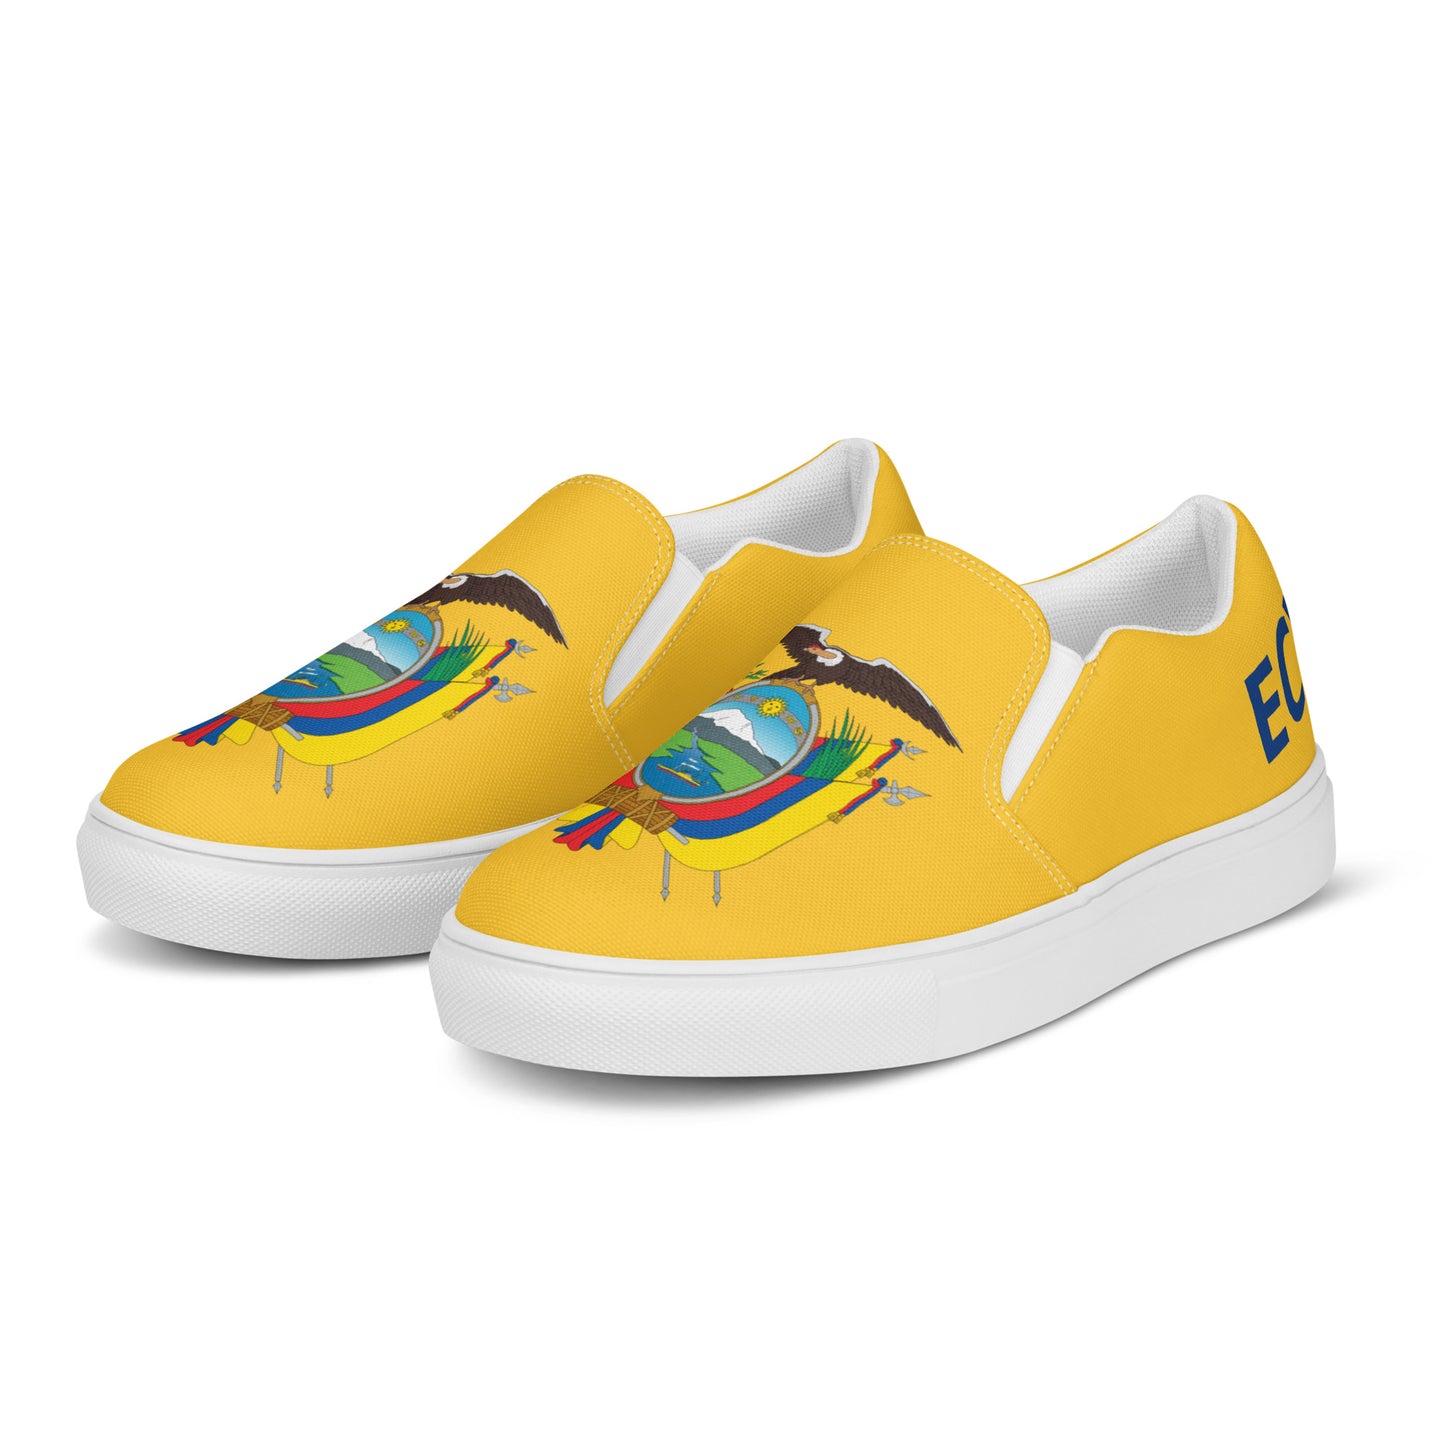 Ecuador - Men - Yellow - Slip-on shoes